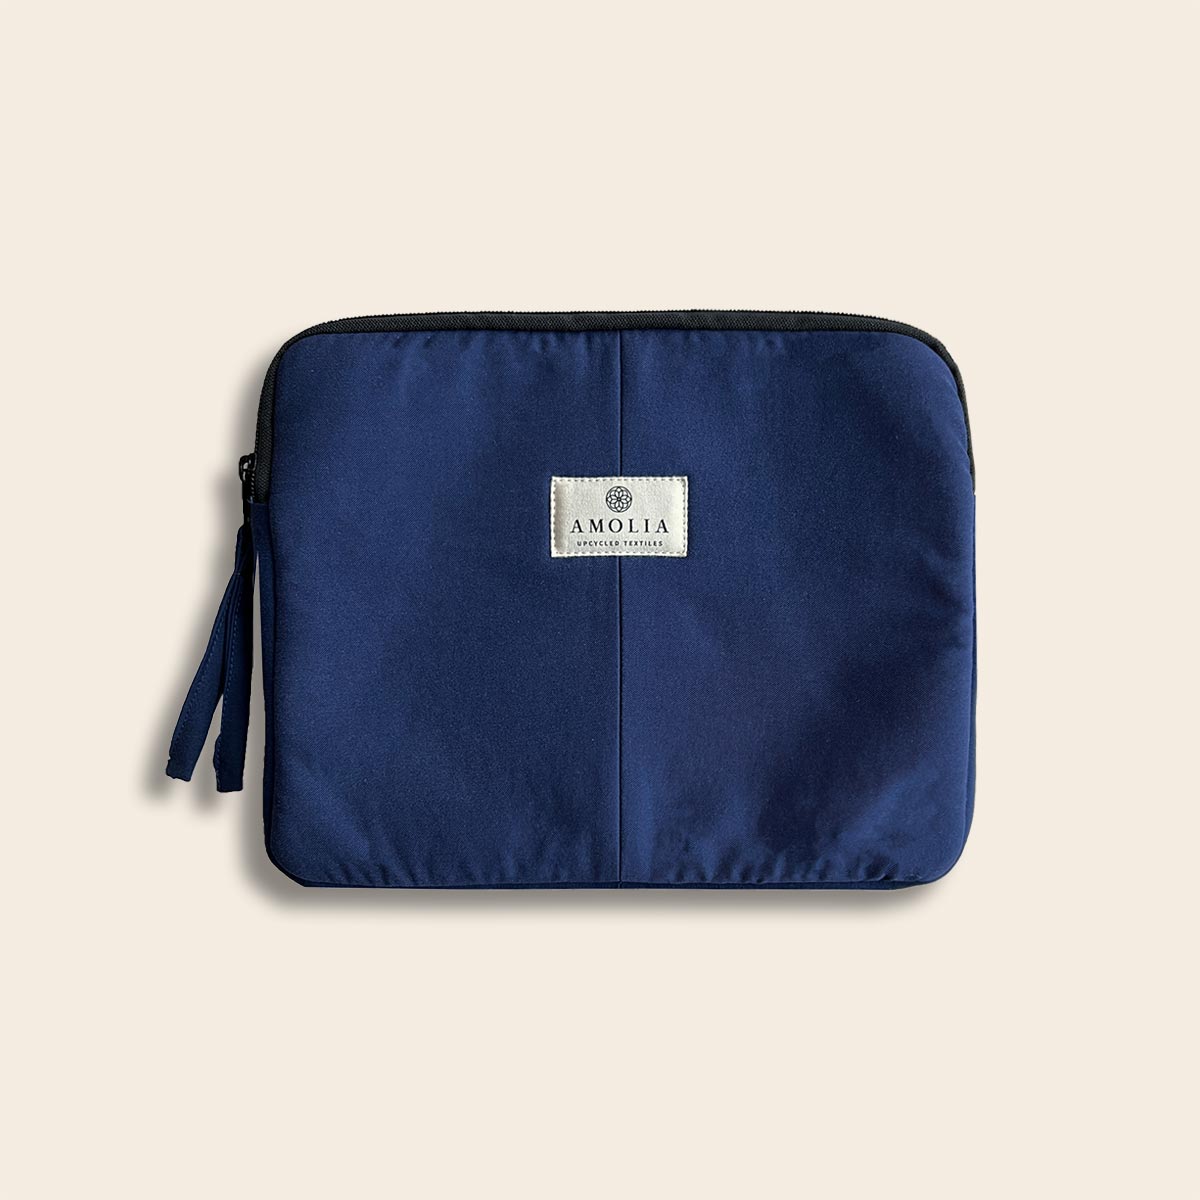 Upcycled iPad taske, marine blå